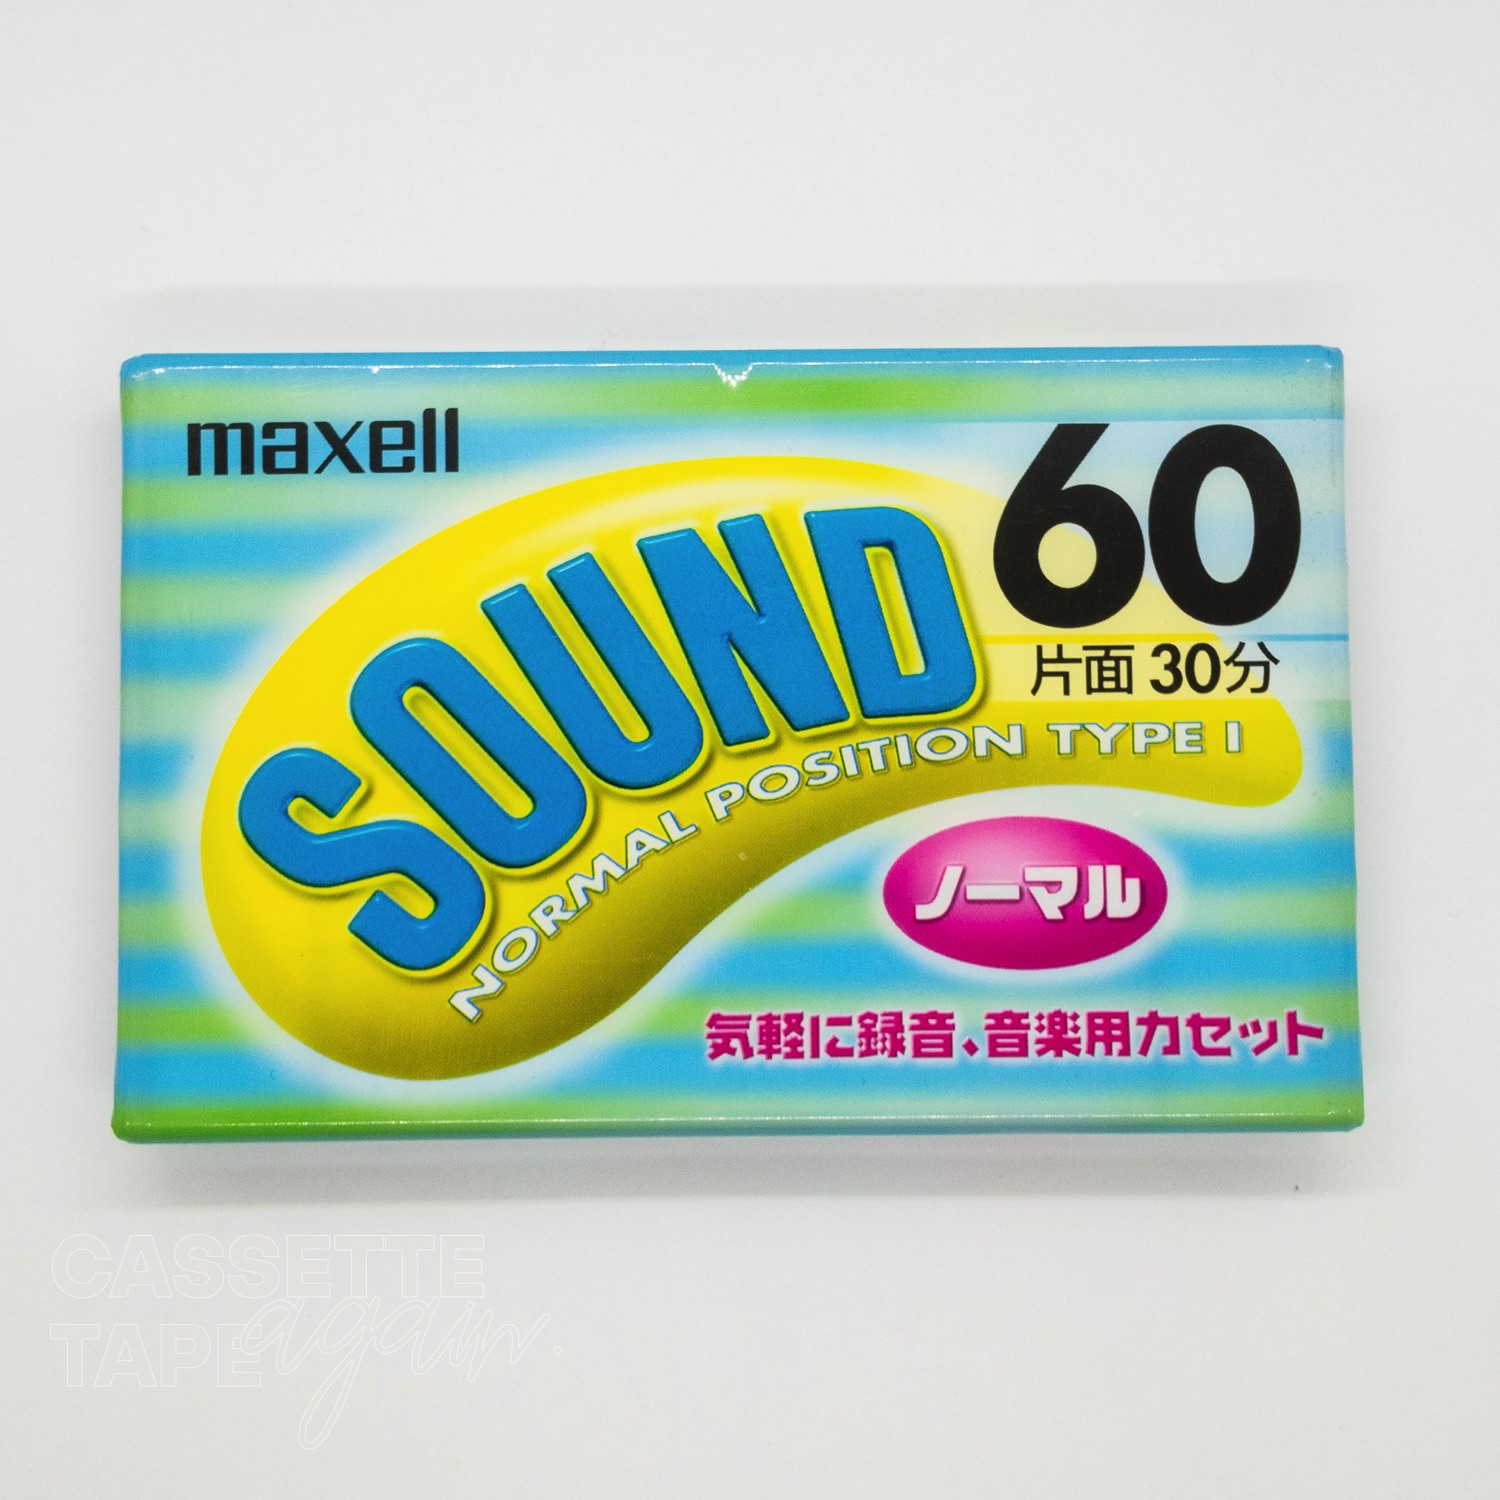 SOUND 60 / maxell(ノーマル)